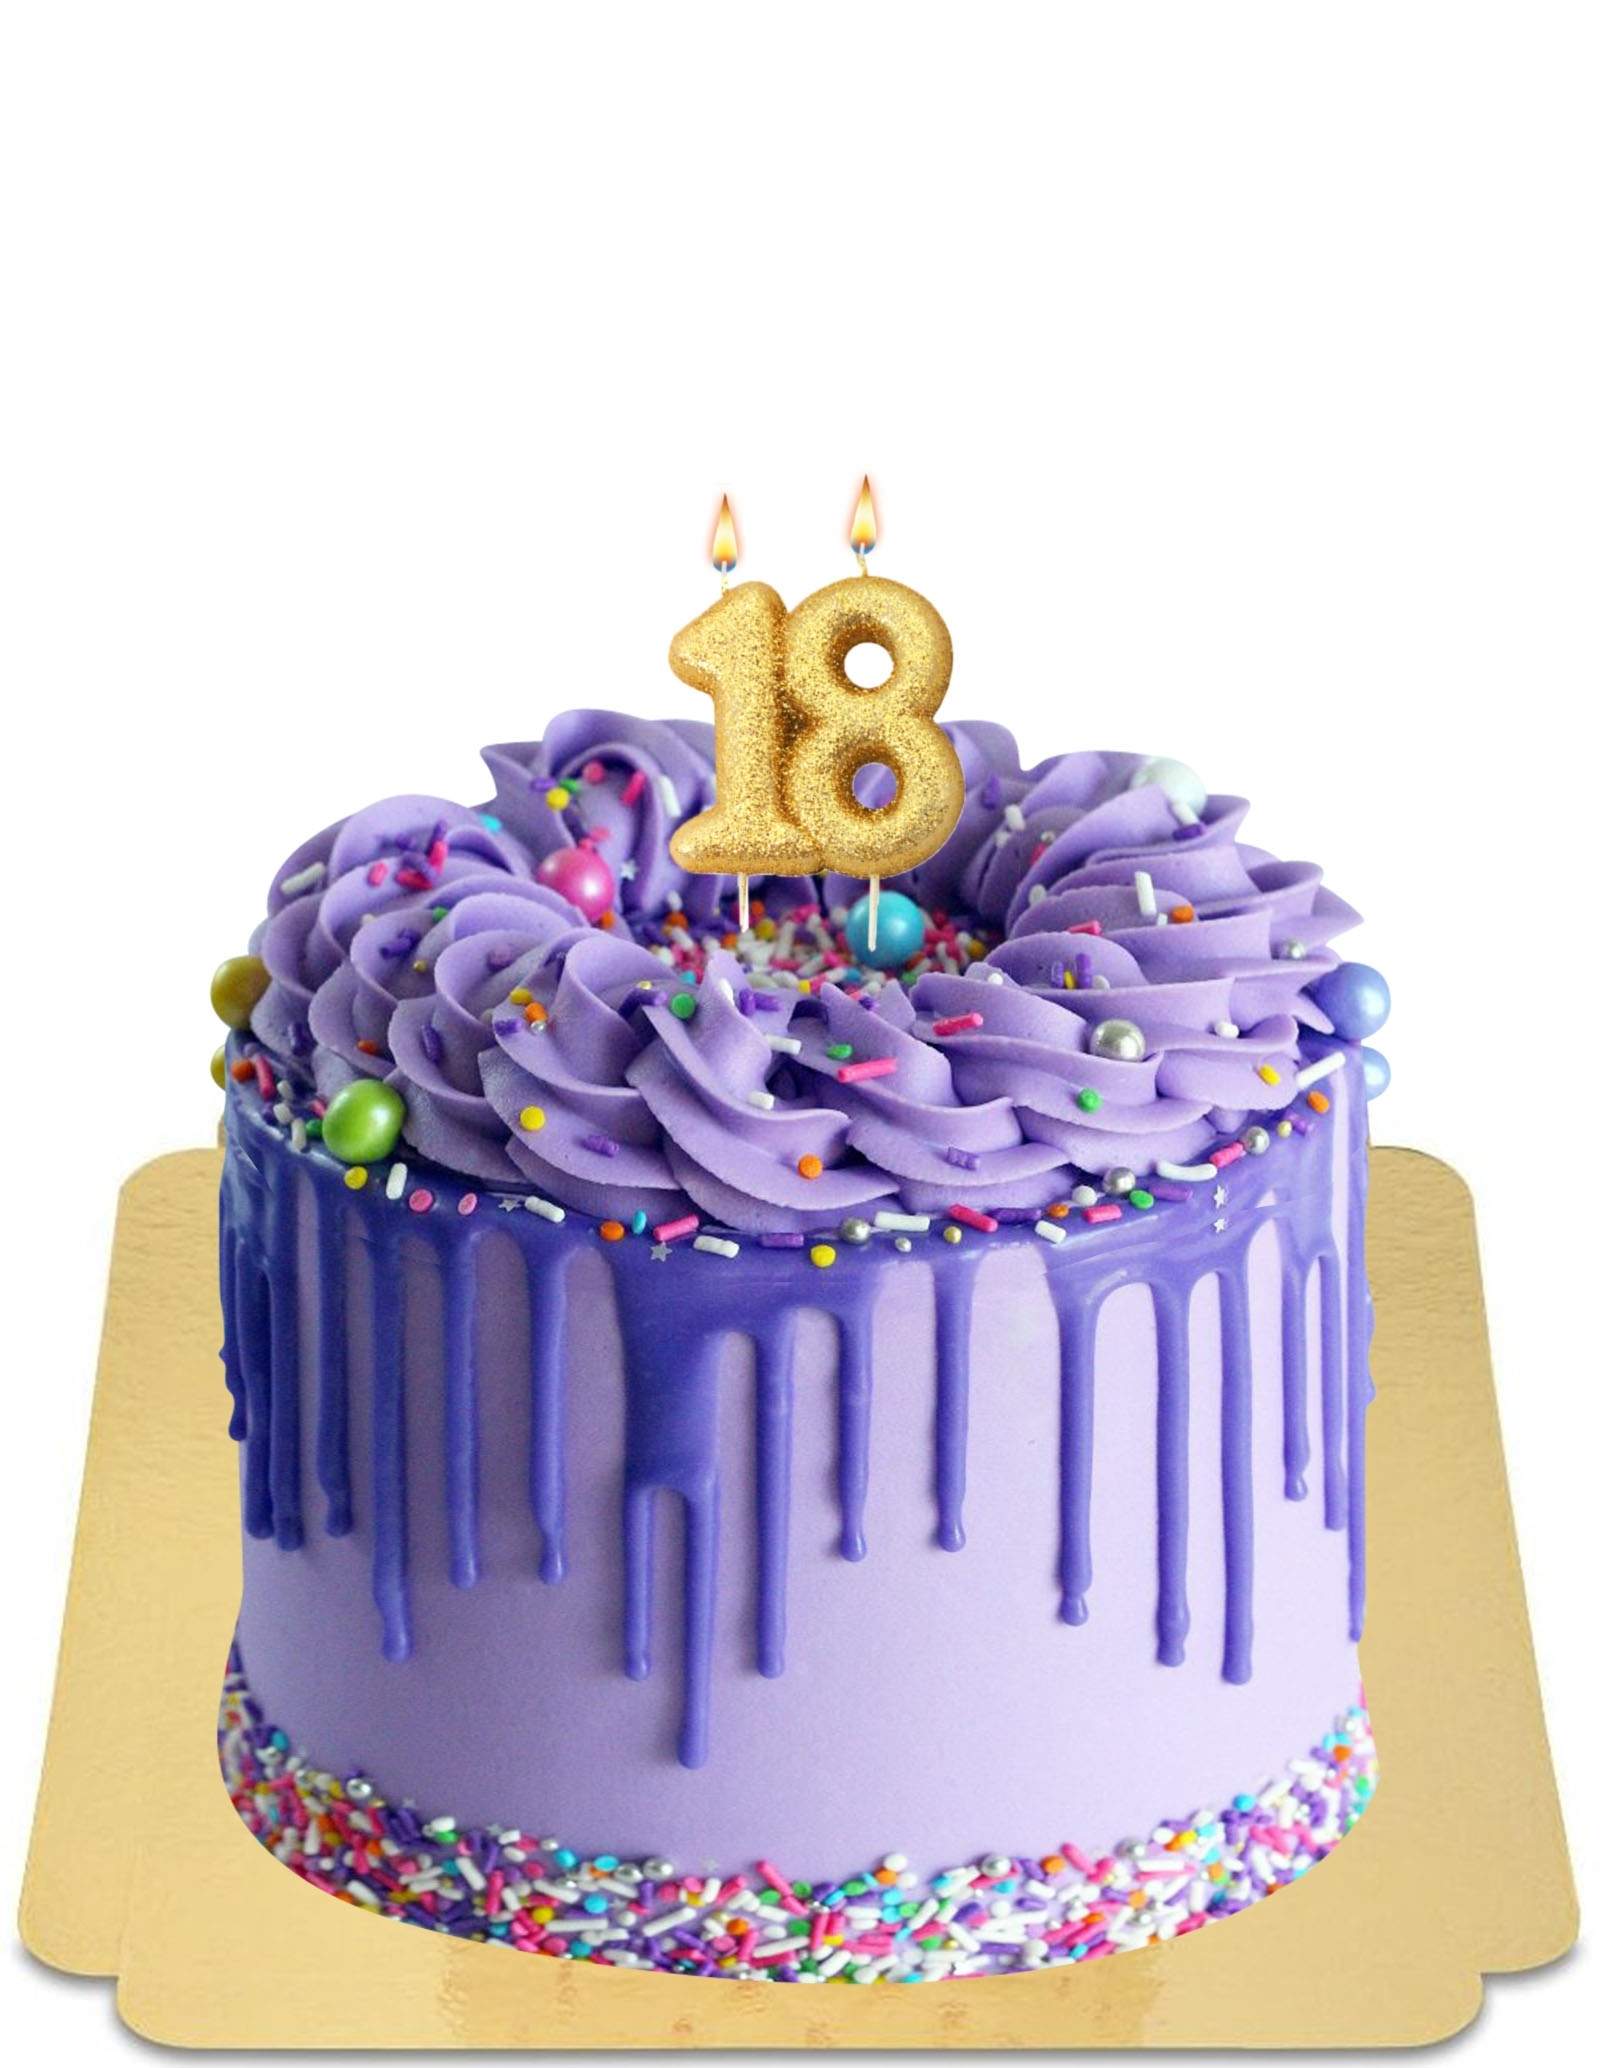 Gâteau 3 étages violet- purple 3 tier cake - INSTAGRAM : ANGELU_CANDY (pour  commander - délai 3 semaines : isilda913@gmail.com) ** vérifier vos spams **